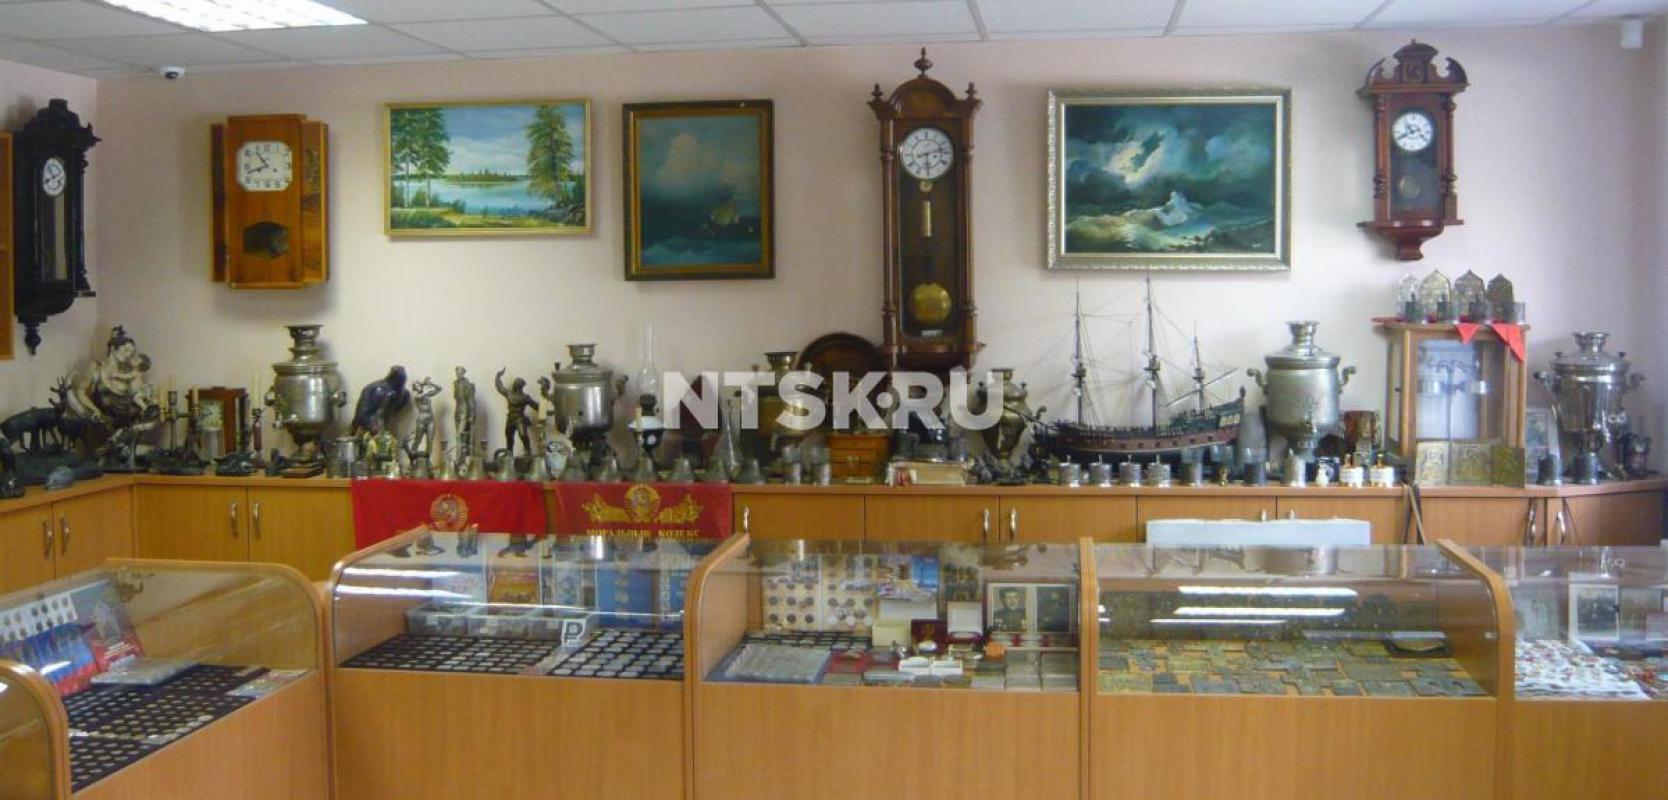 Магазин "АНТИКВАРИАТ" покупает предметы старины, медали, награды, монеты до 1917 года, кас - Орск